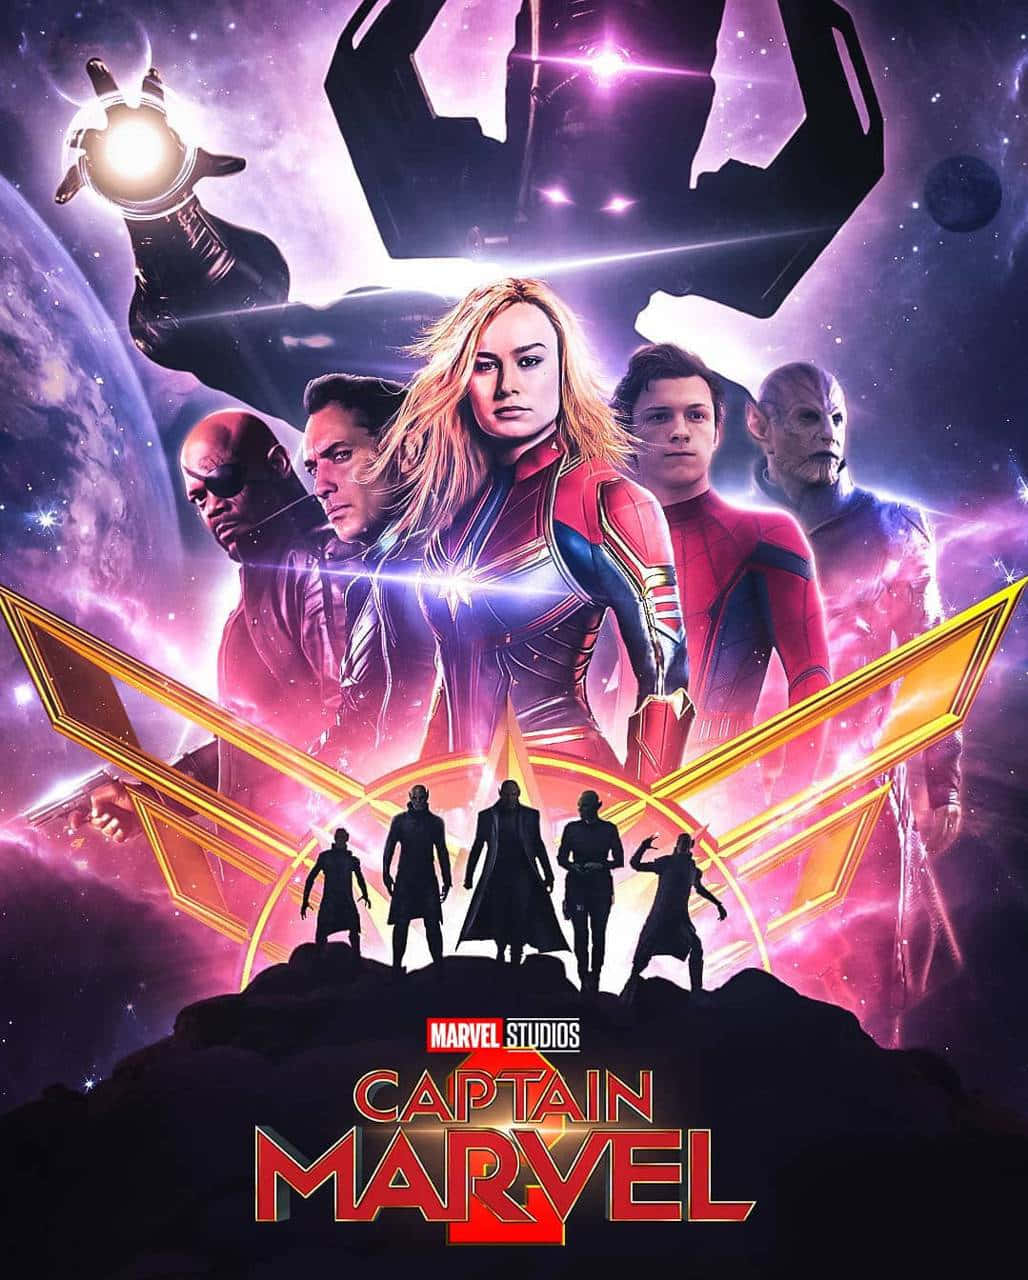 Sieist Zurück! Captain Marvel Kehrt In Der Fortsetzung Zurück, Um Sich Einem Noch Mächtigeren Bösewicht Zu Stellen. Wallpaper